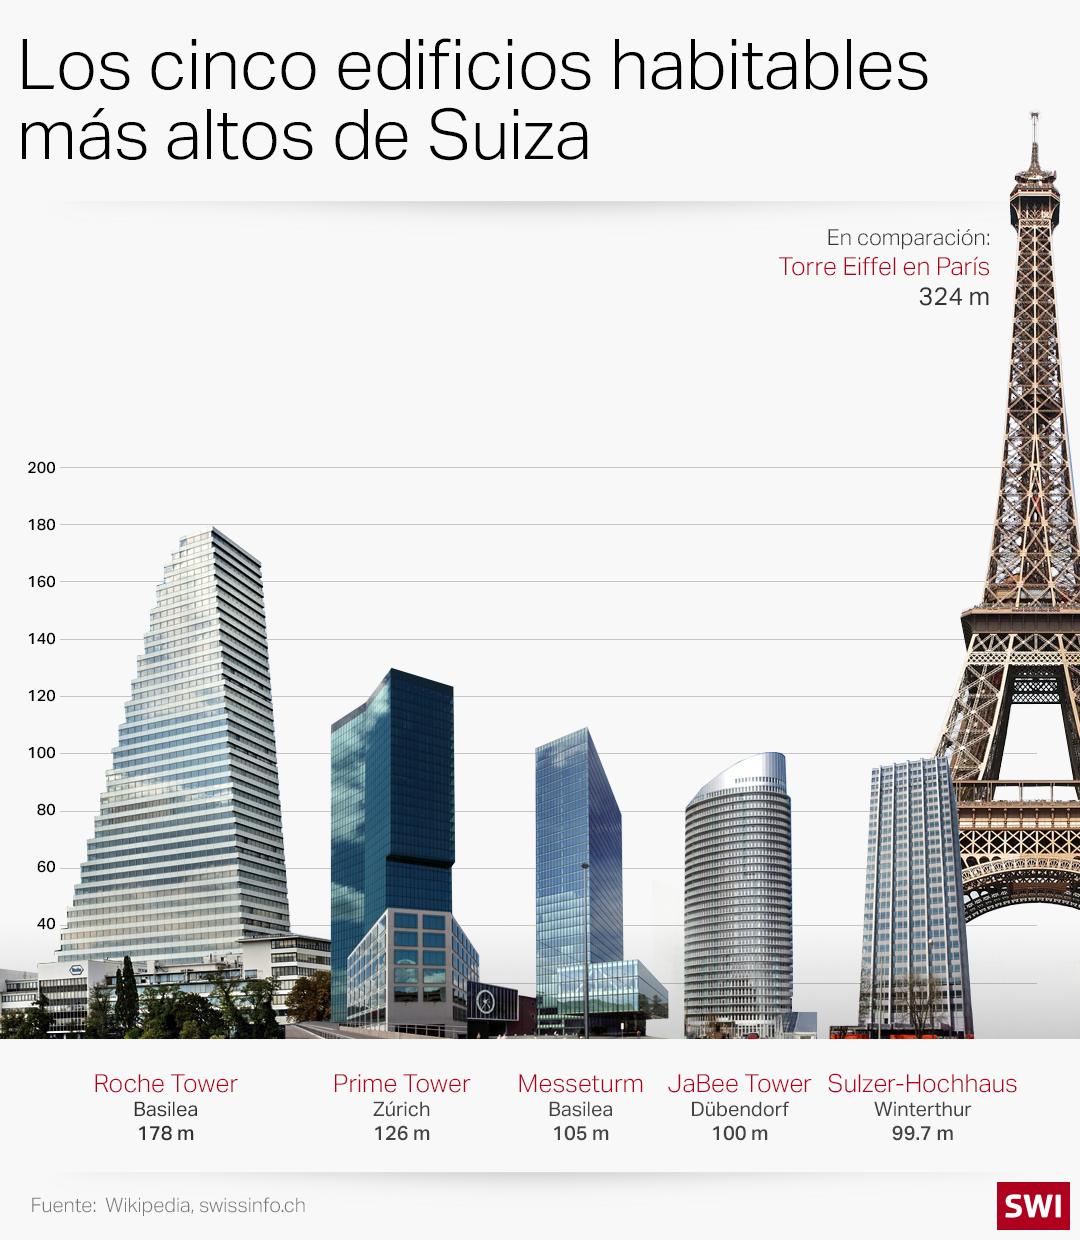 Los cinco rascacielos residenciales más altos de Suiza